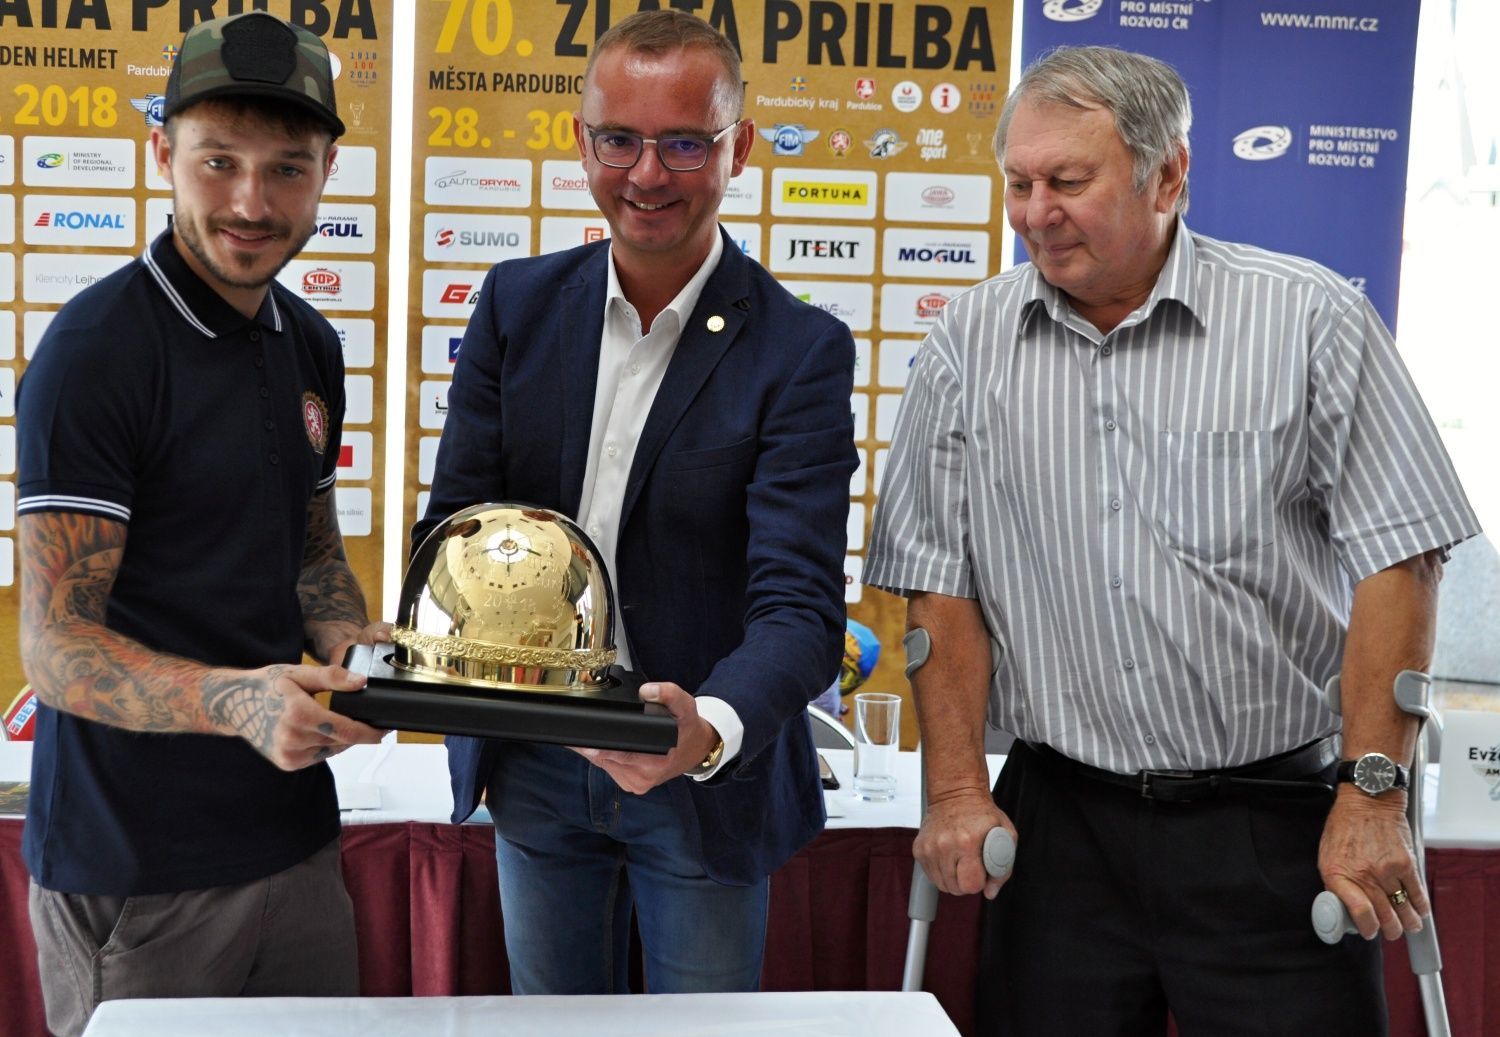 Václav Milík, Jan Šťovíček a Evžen Erban s trofejí pro vítěze Zlaté přilby 2018